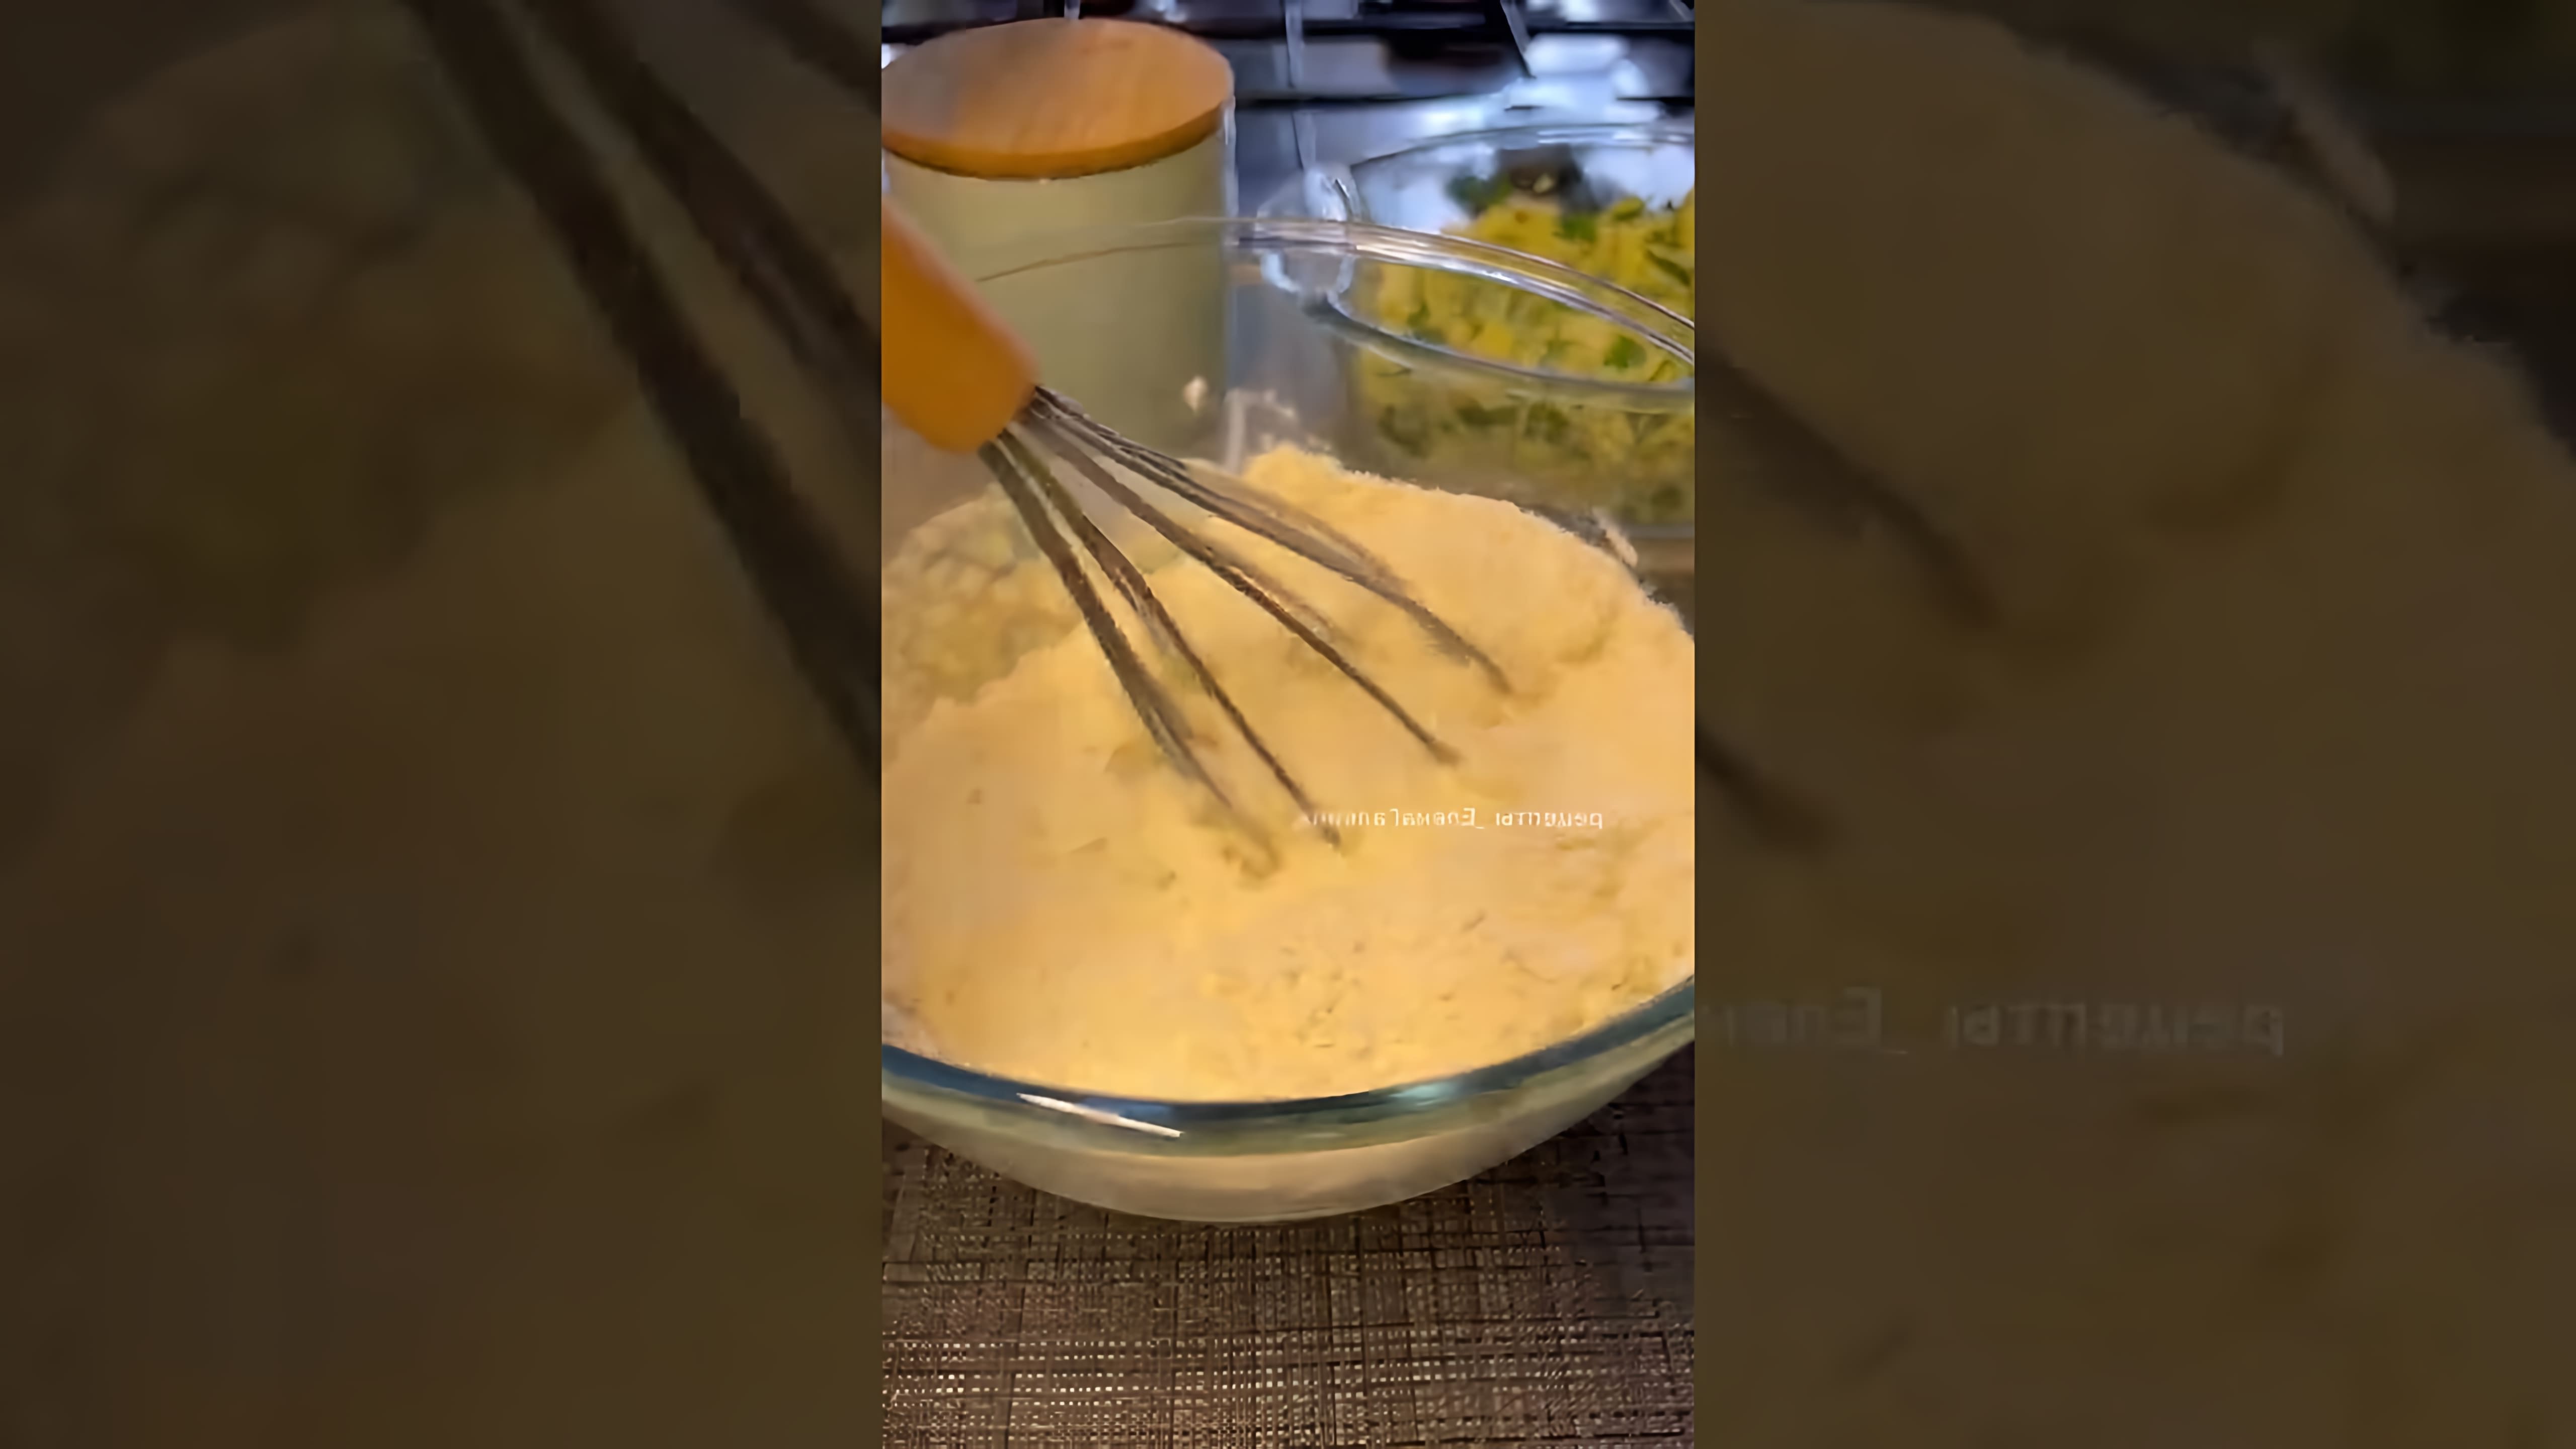 В этом видео демонстрируется процесс приготовления лепешек с творогом и зеленью на сухой сковородке